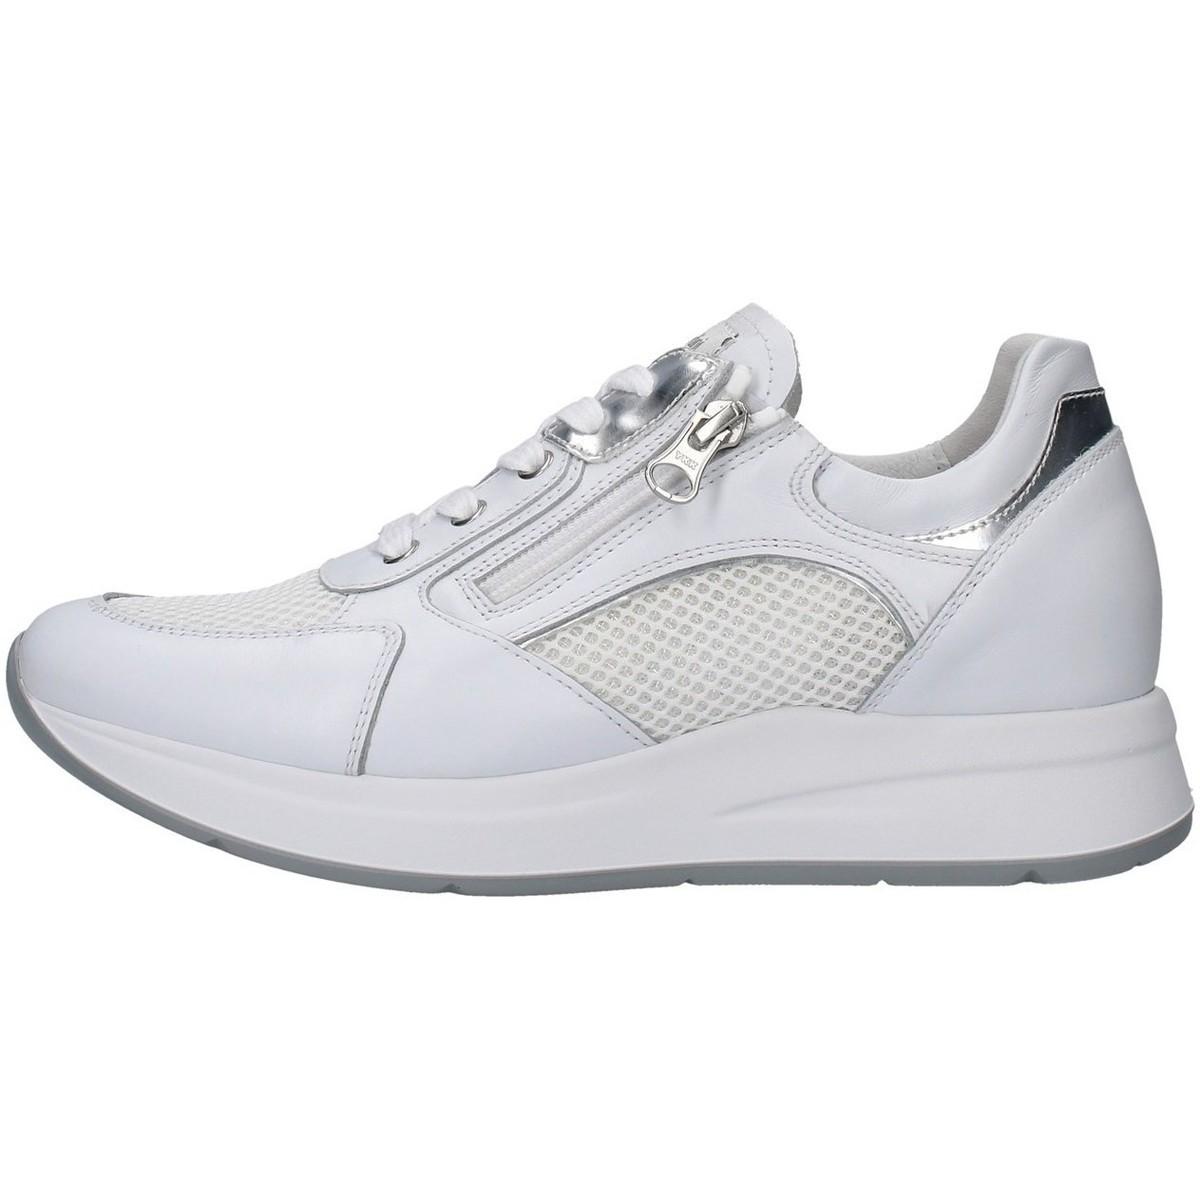 Nero Giardini E010471d Shoes (trainers) in White - Lyst